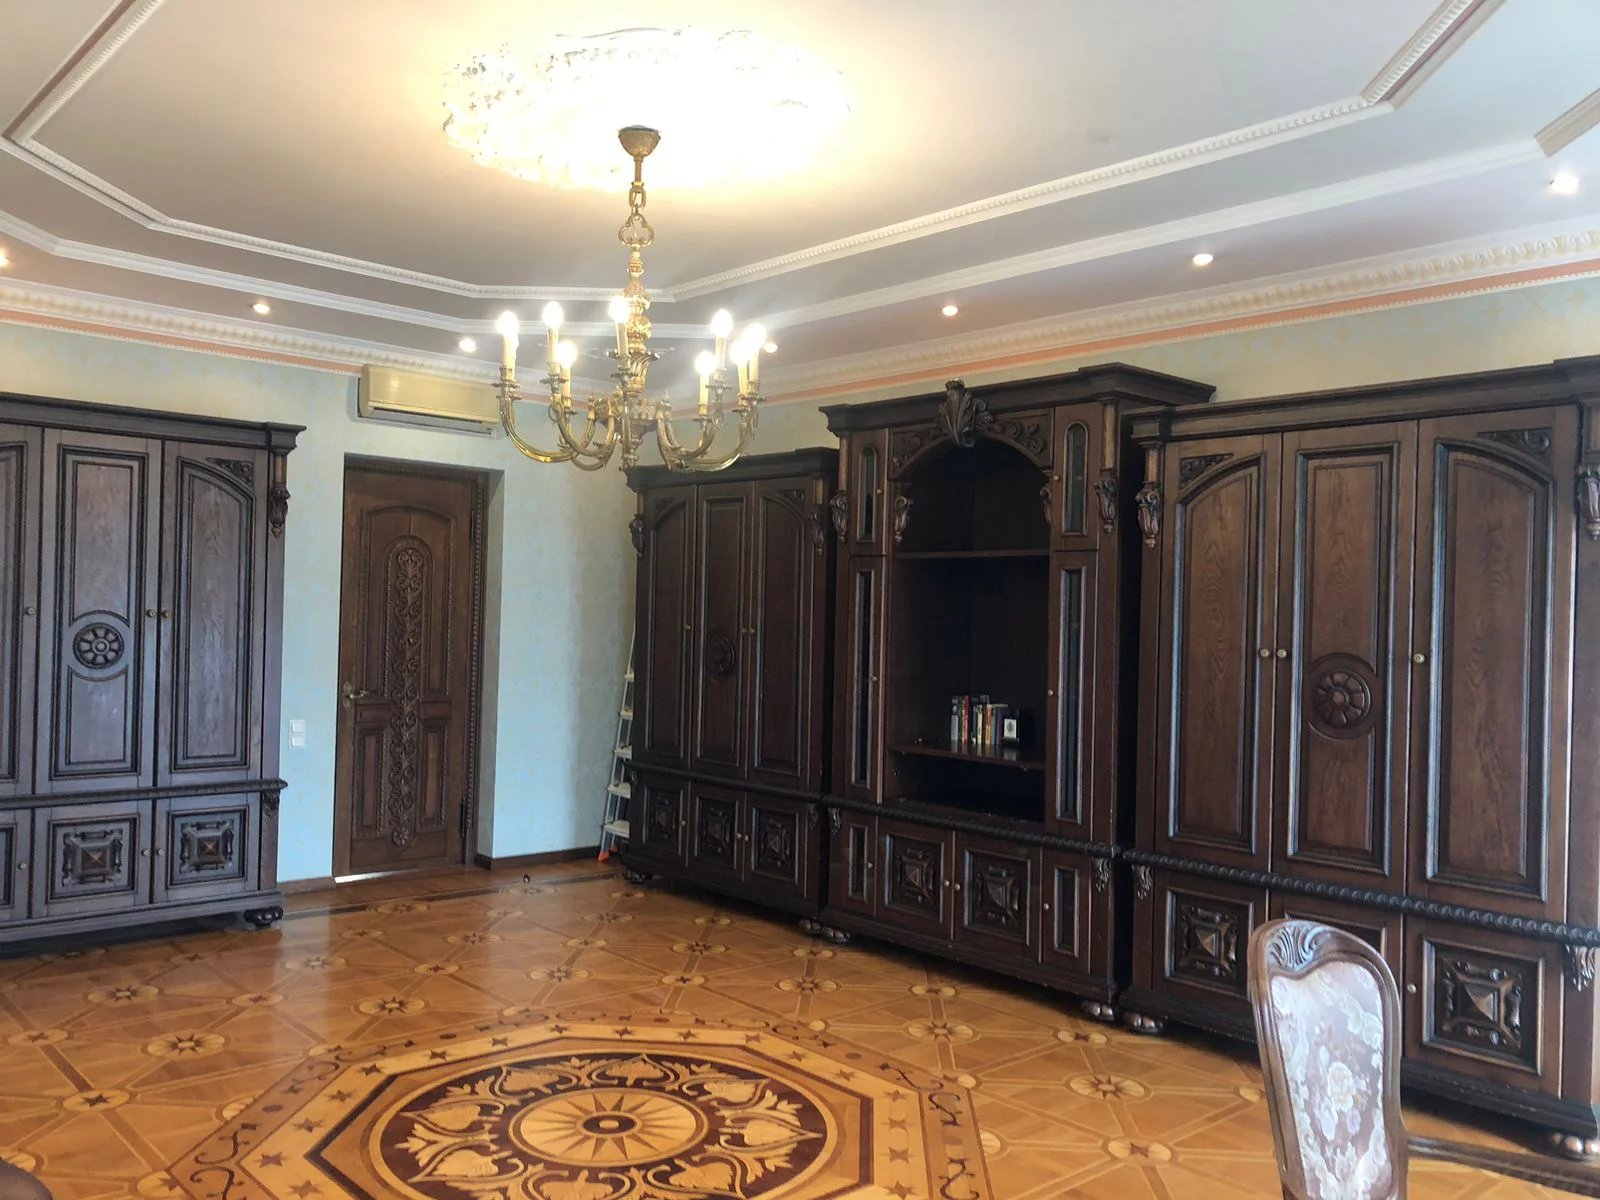 Exclusivité Appartement à vendre sur la célèbre Perspective Nevski à Saint-Petersbourg. 221m², 5 pièces,3 grandes chambres.